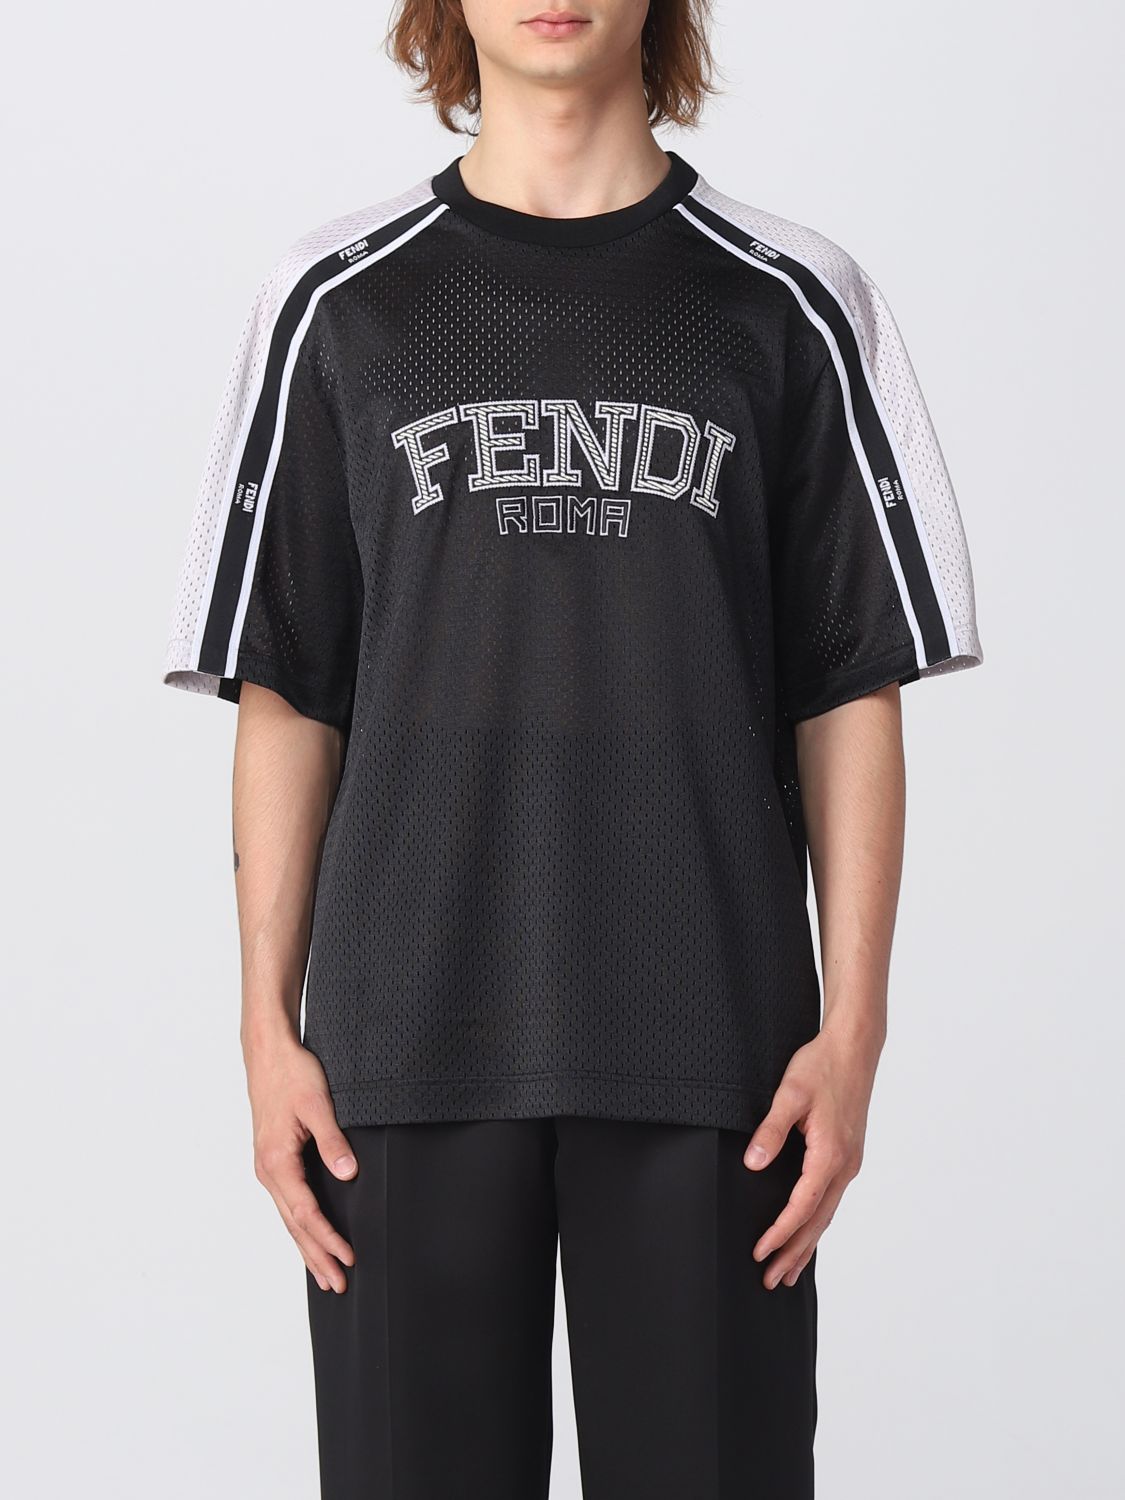 FENDI: nylon t-shirt - Black | Fendi t-shirt FAF692APC2 online at ...